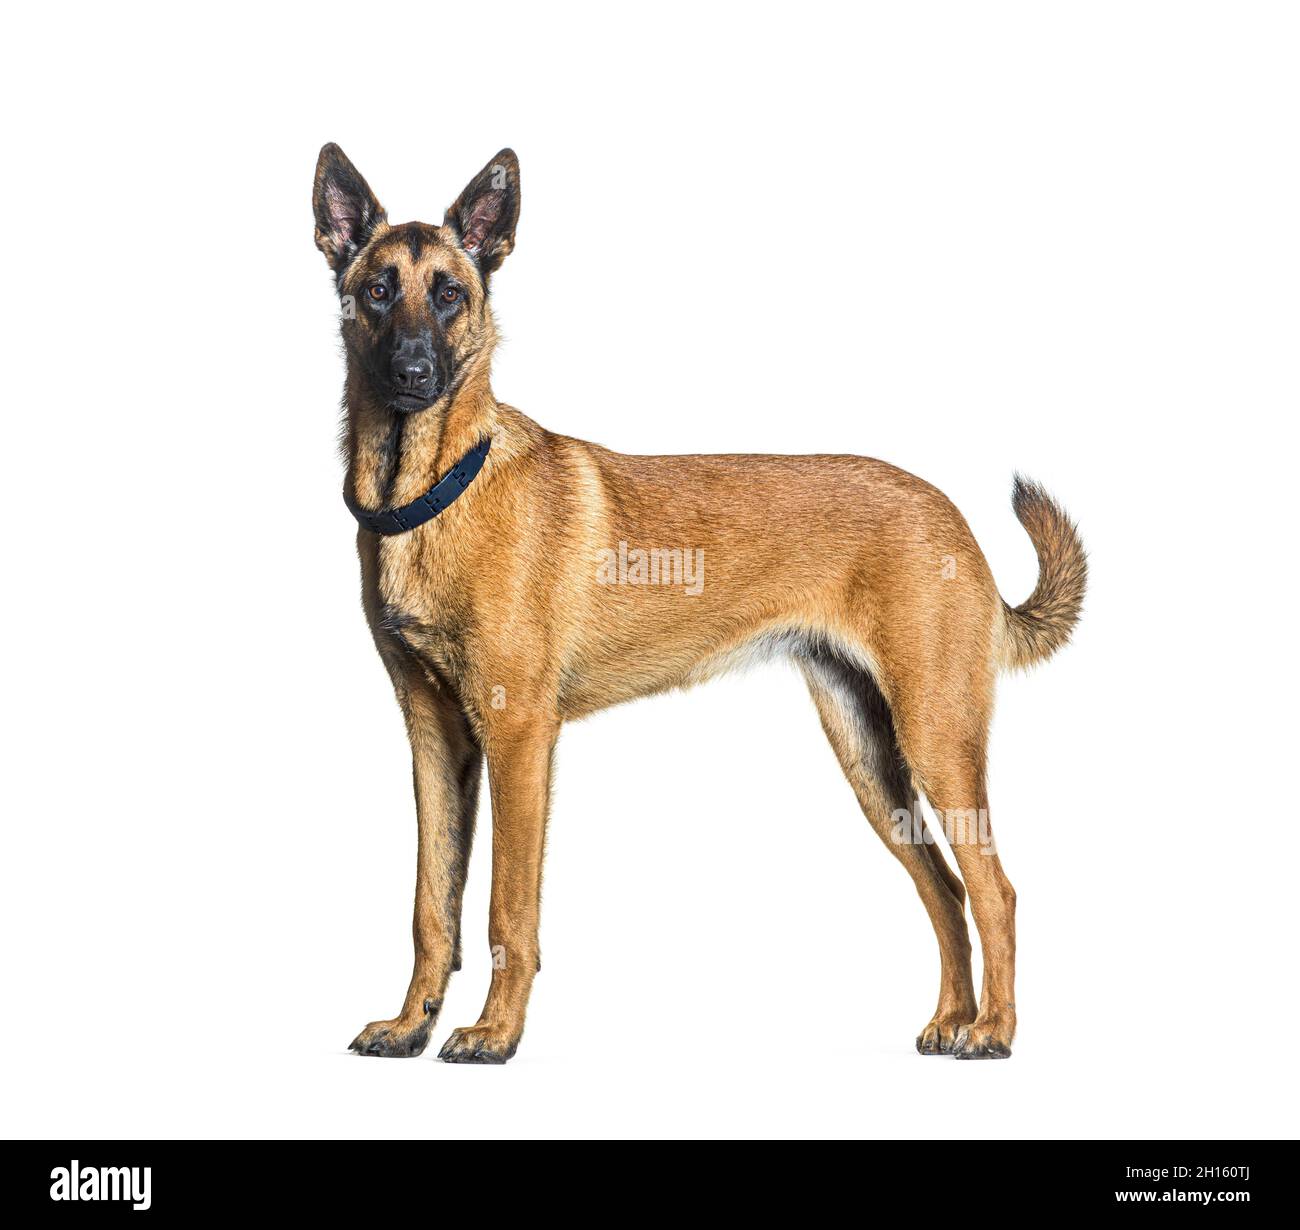 Vista laterale di un cane Malinois in piedi che guarda la macchina fotografica e indossa un colletto, isolato su bianco Foto Stock